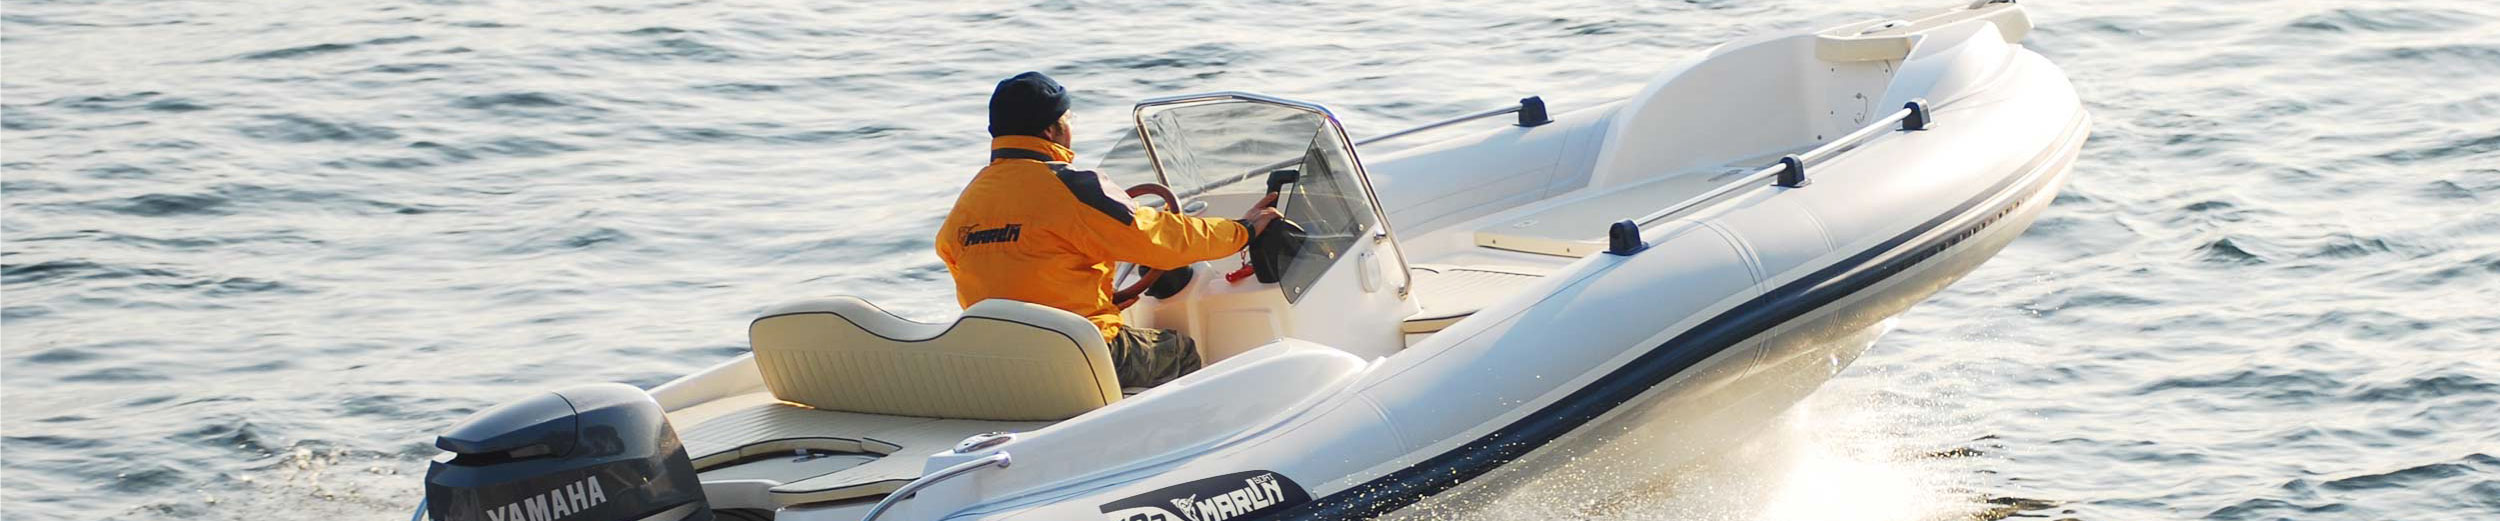 Marlin Boat - Outboard model  182